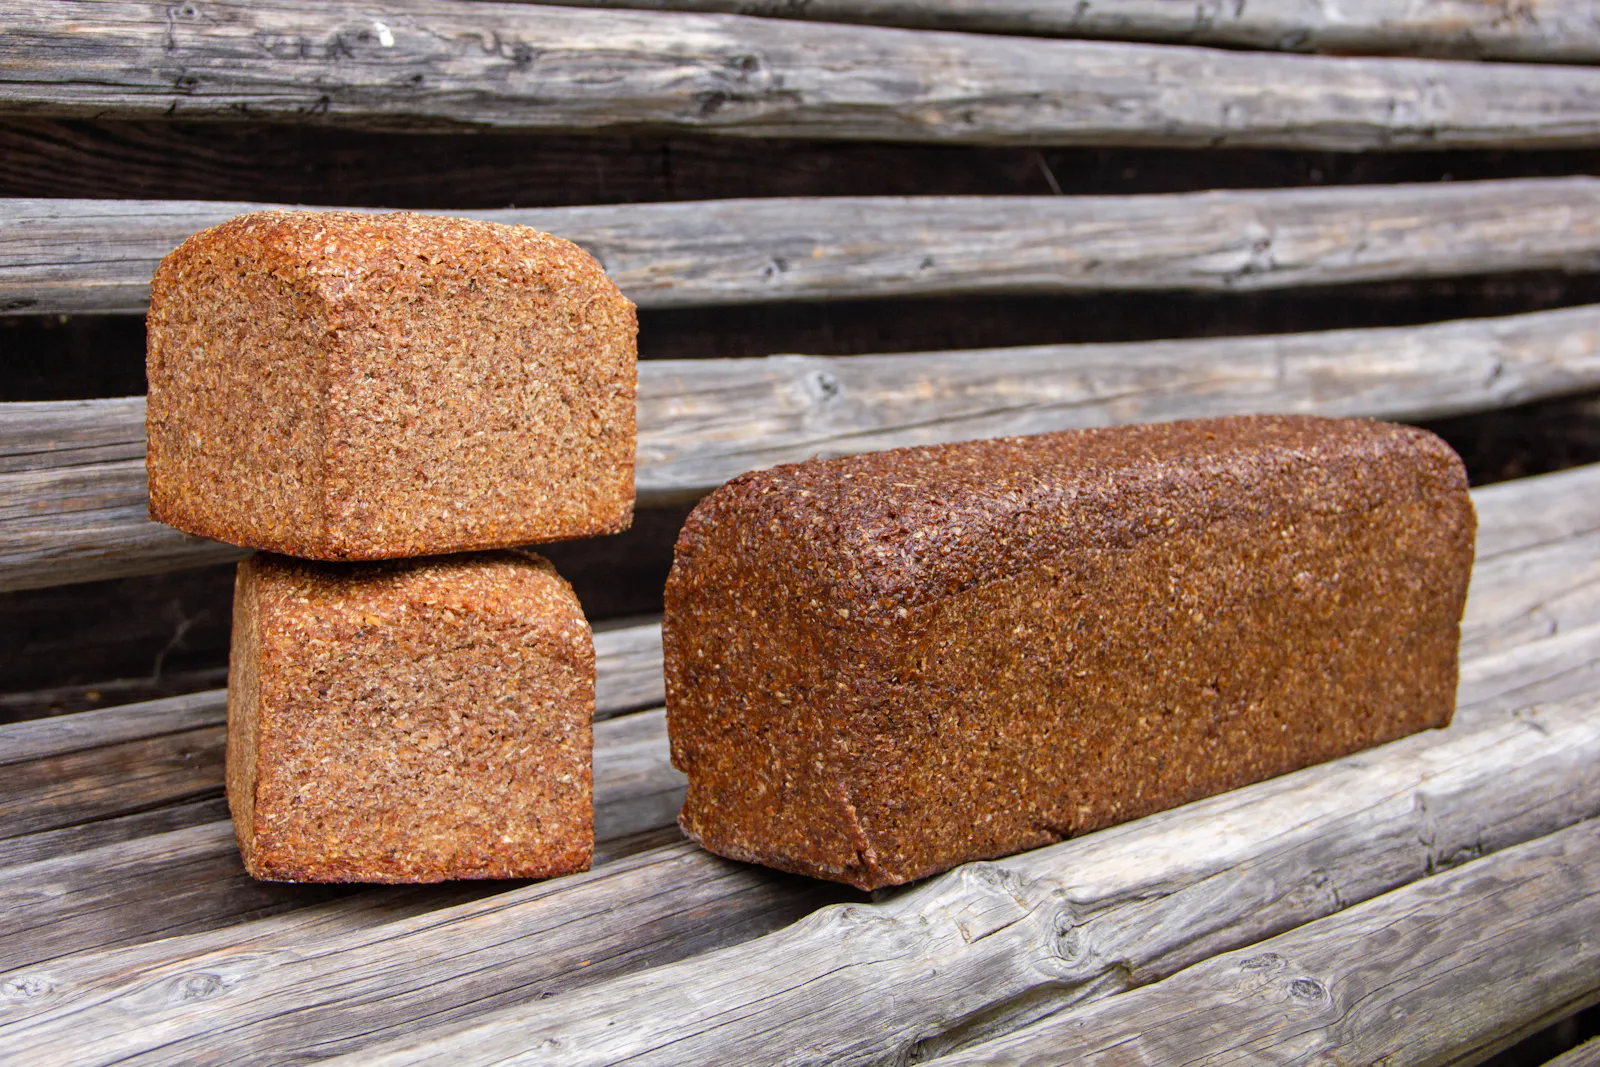 Echter Pumpernickel nach überlieferter Tradition mit Brandsauerteig hergestellt (rechts) und das gleiche Brot mit deutlich kürzerer Backzeit als Roggenschrotbrot/Schwarzbrot (links).